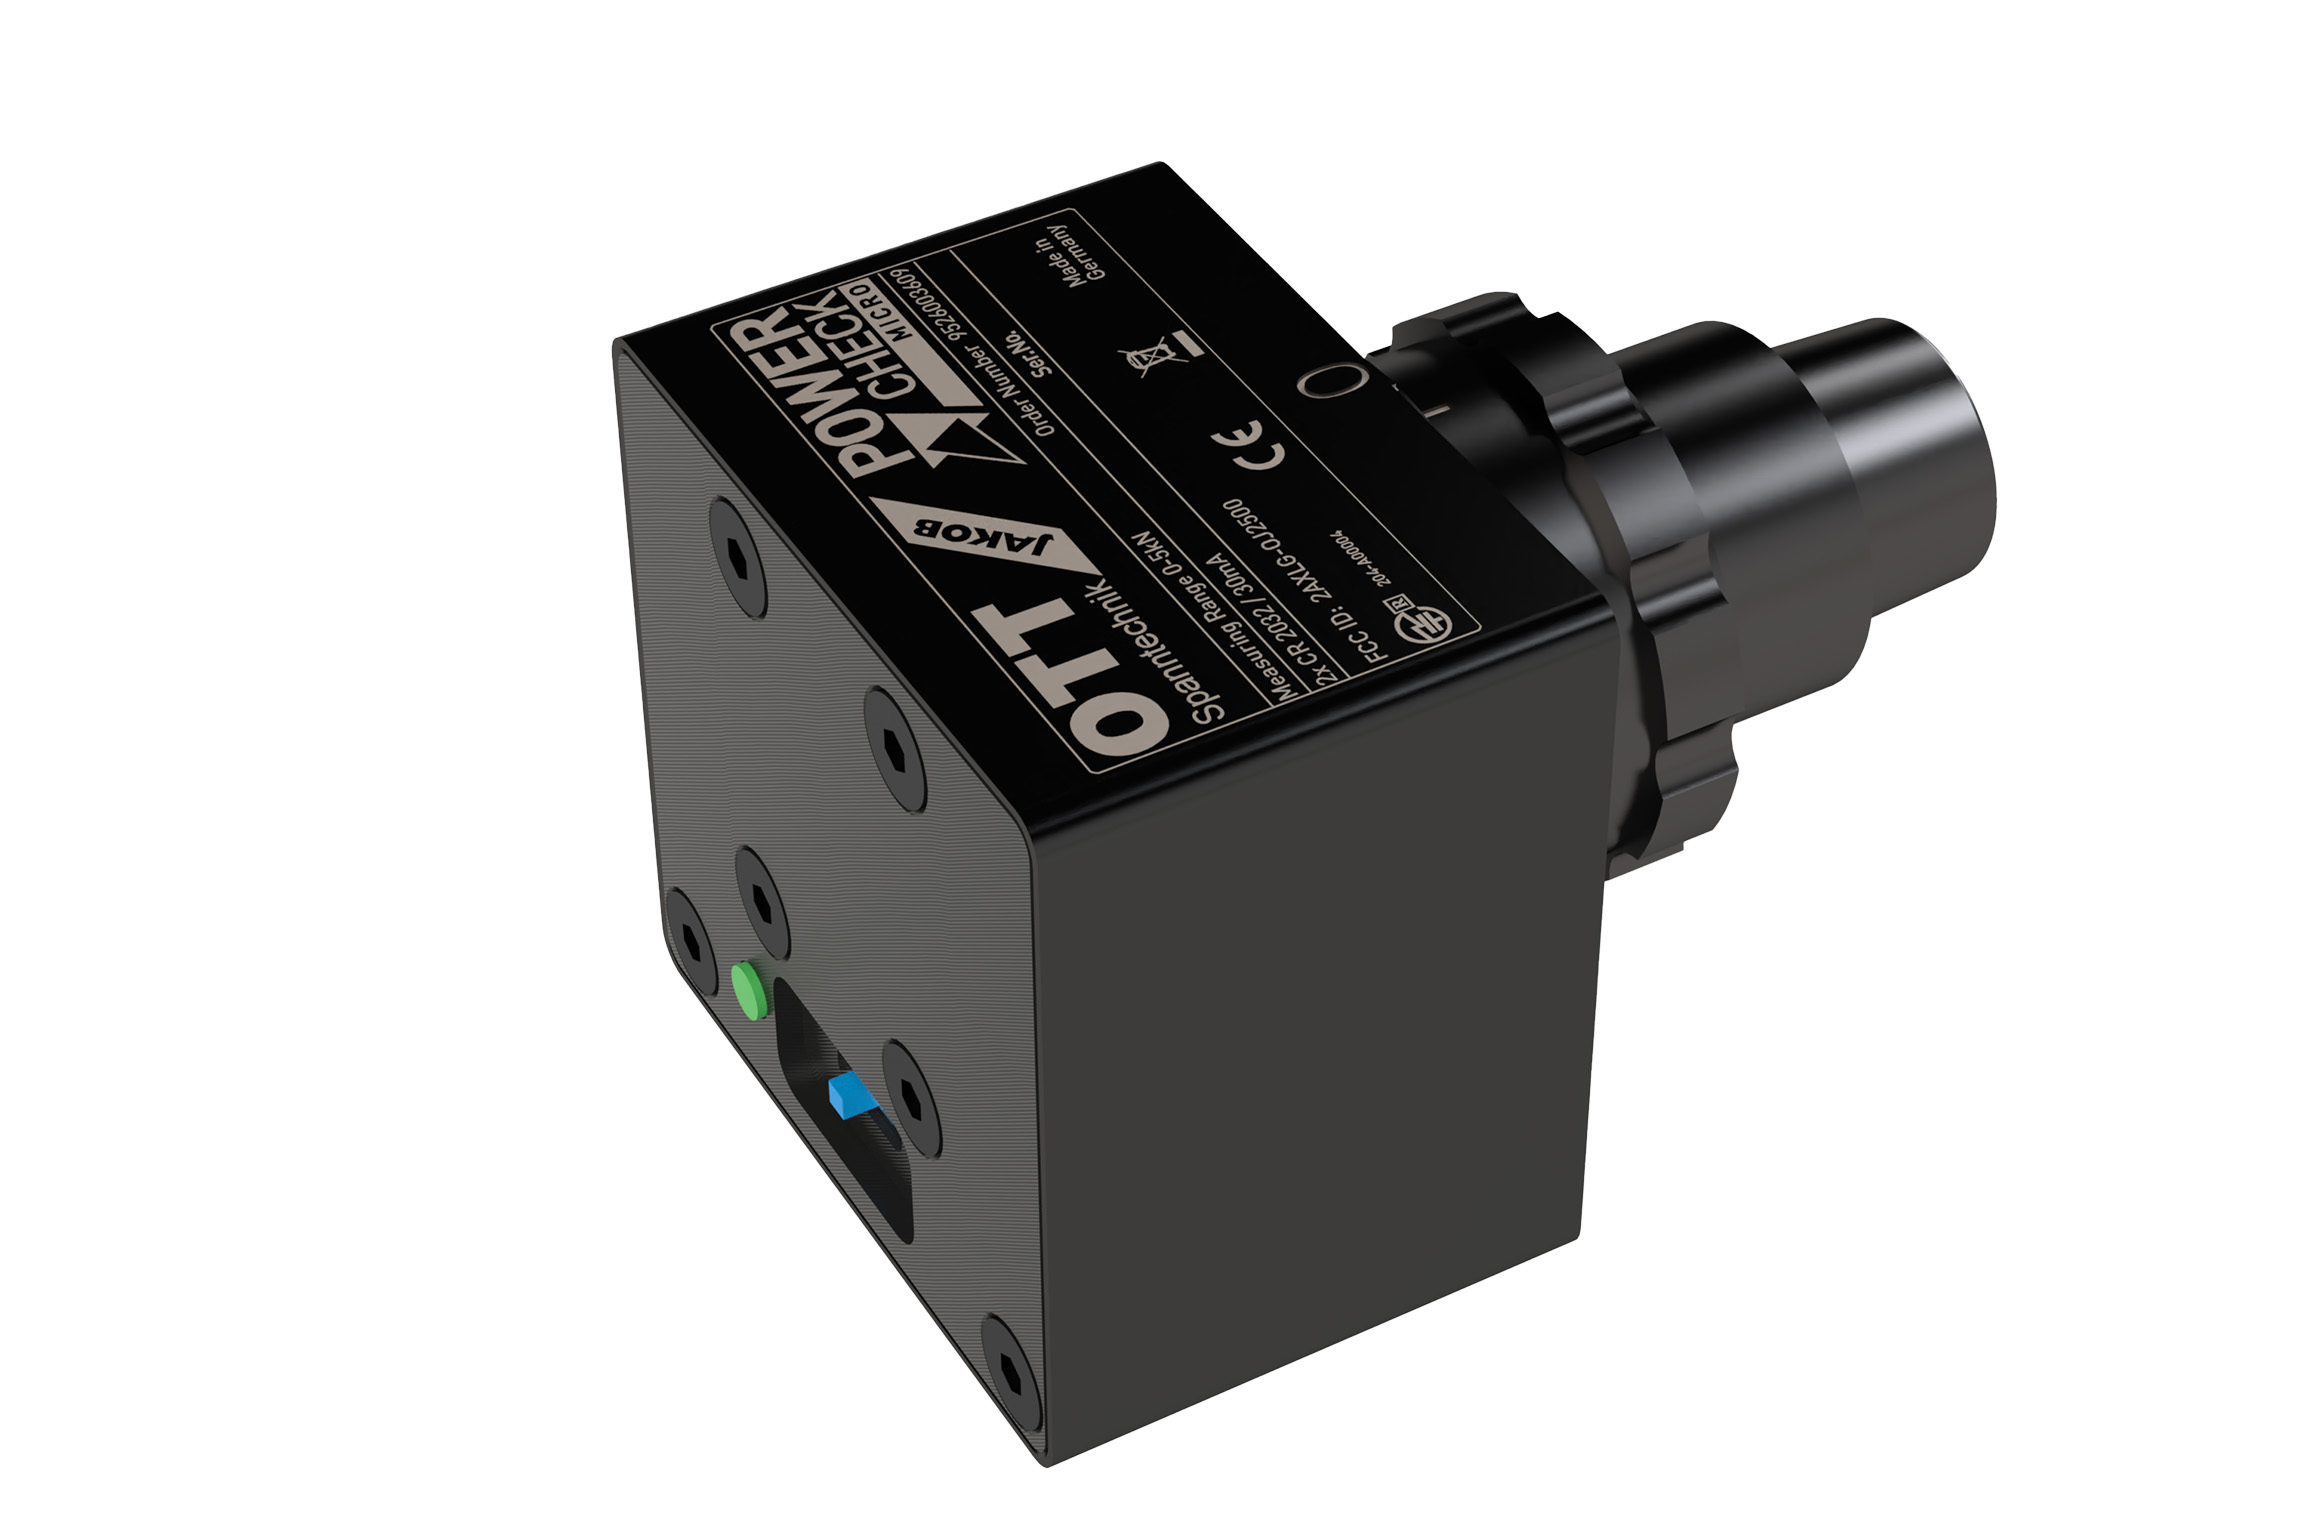 OTT-JAKOB - Unternehmen - Bild - Jetzt neu: Power-Check Micro für kleinste Spannsysteme